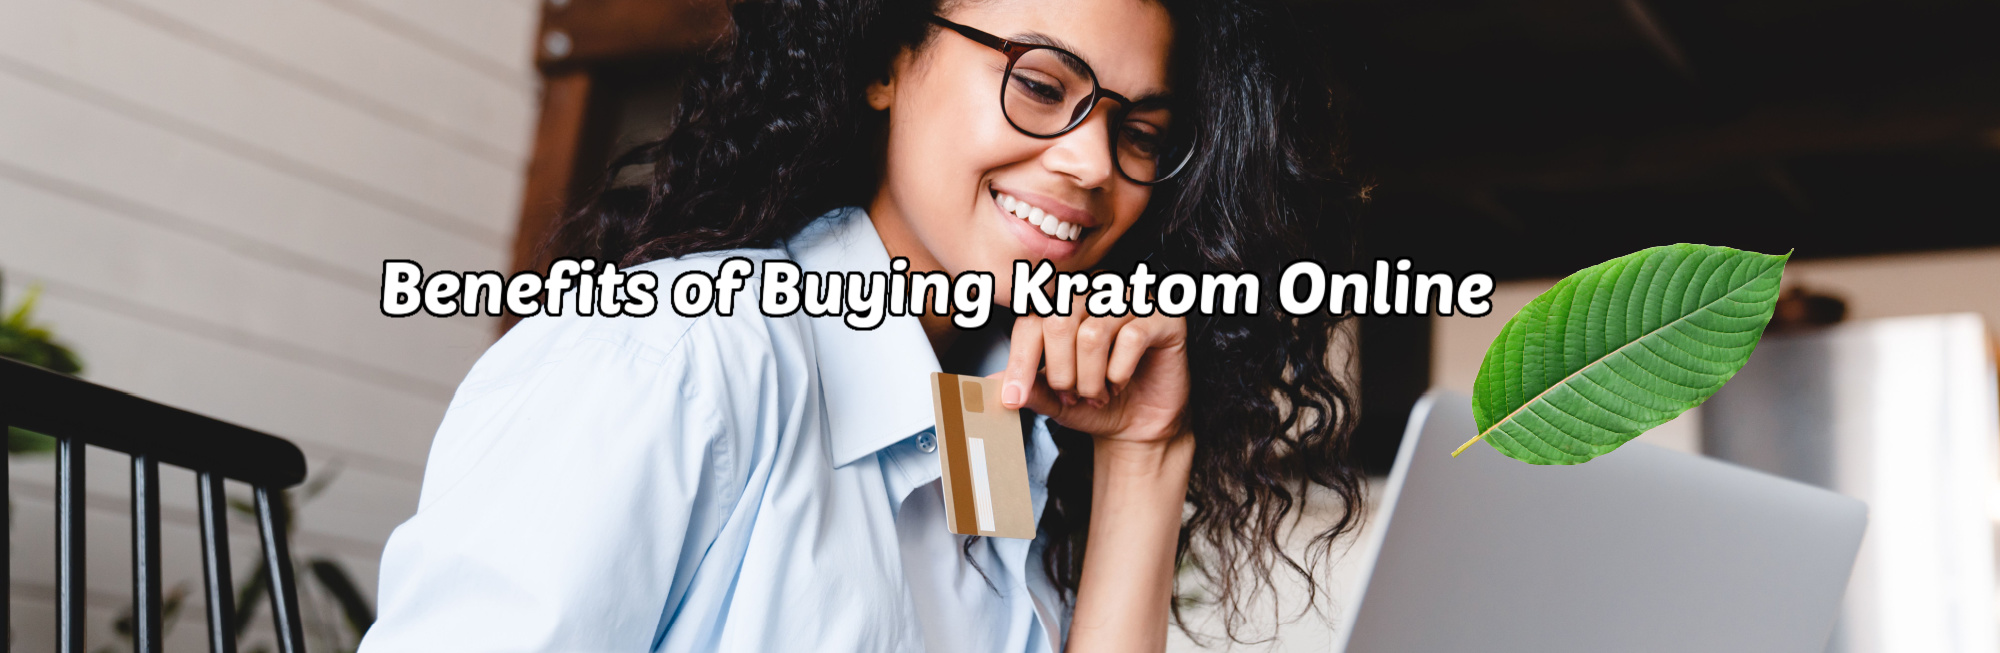 image of benefits of buying kratom online